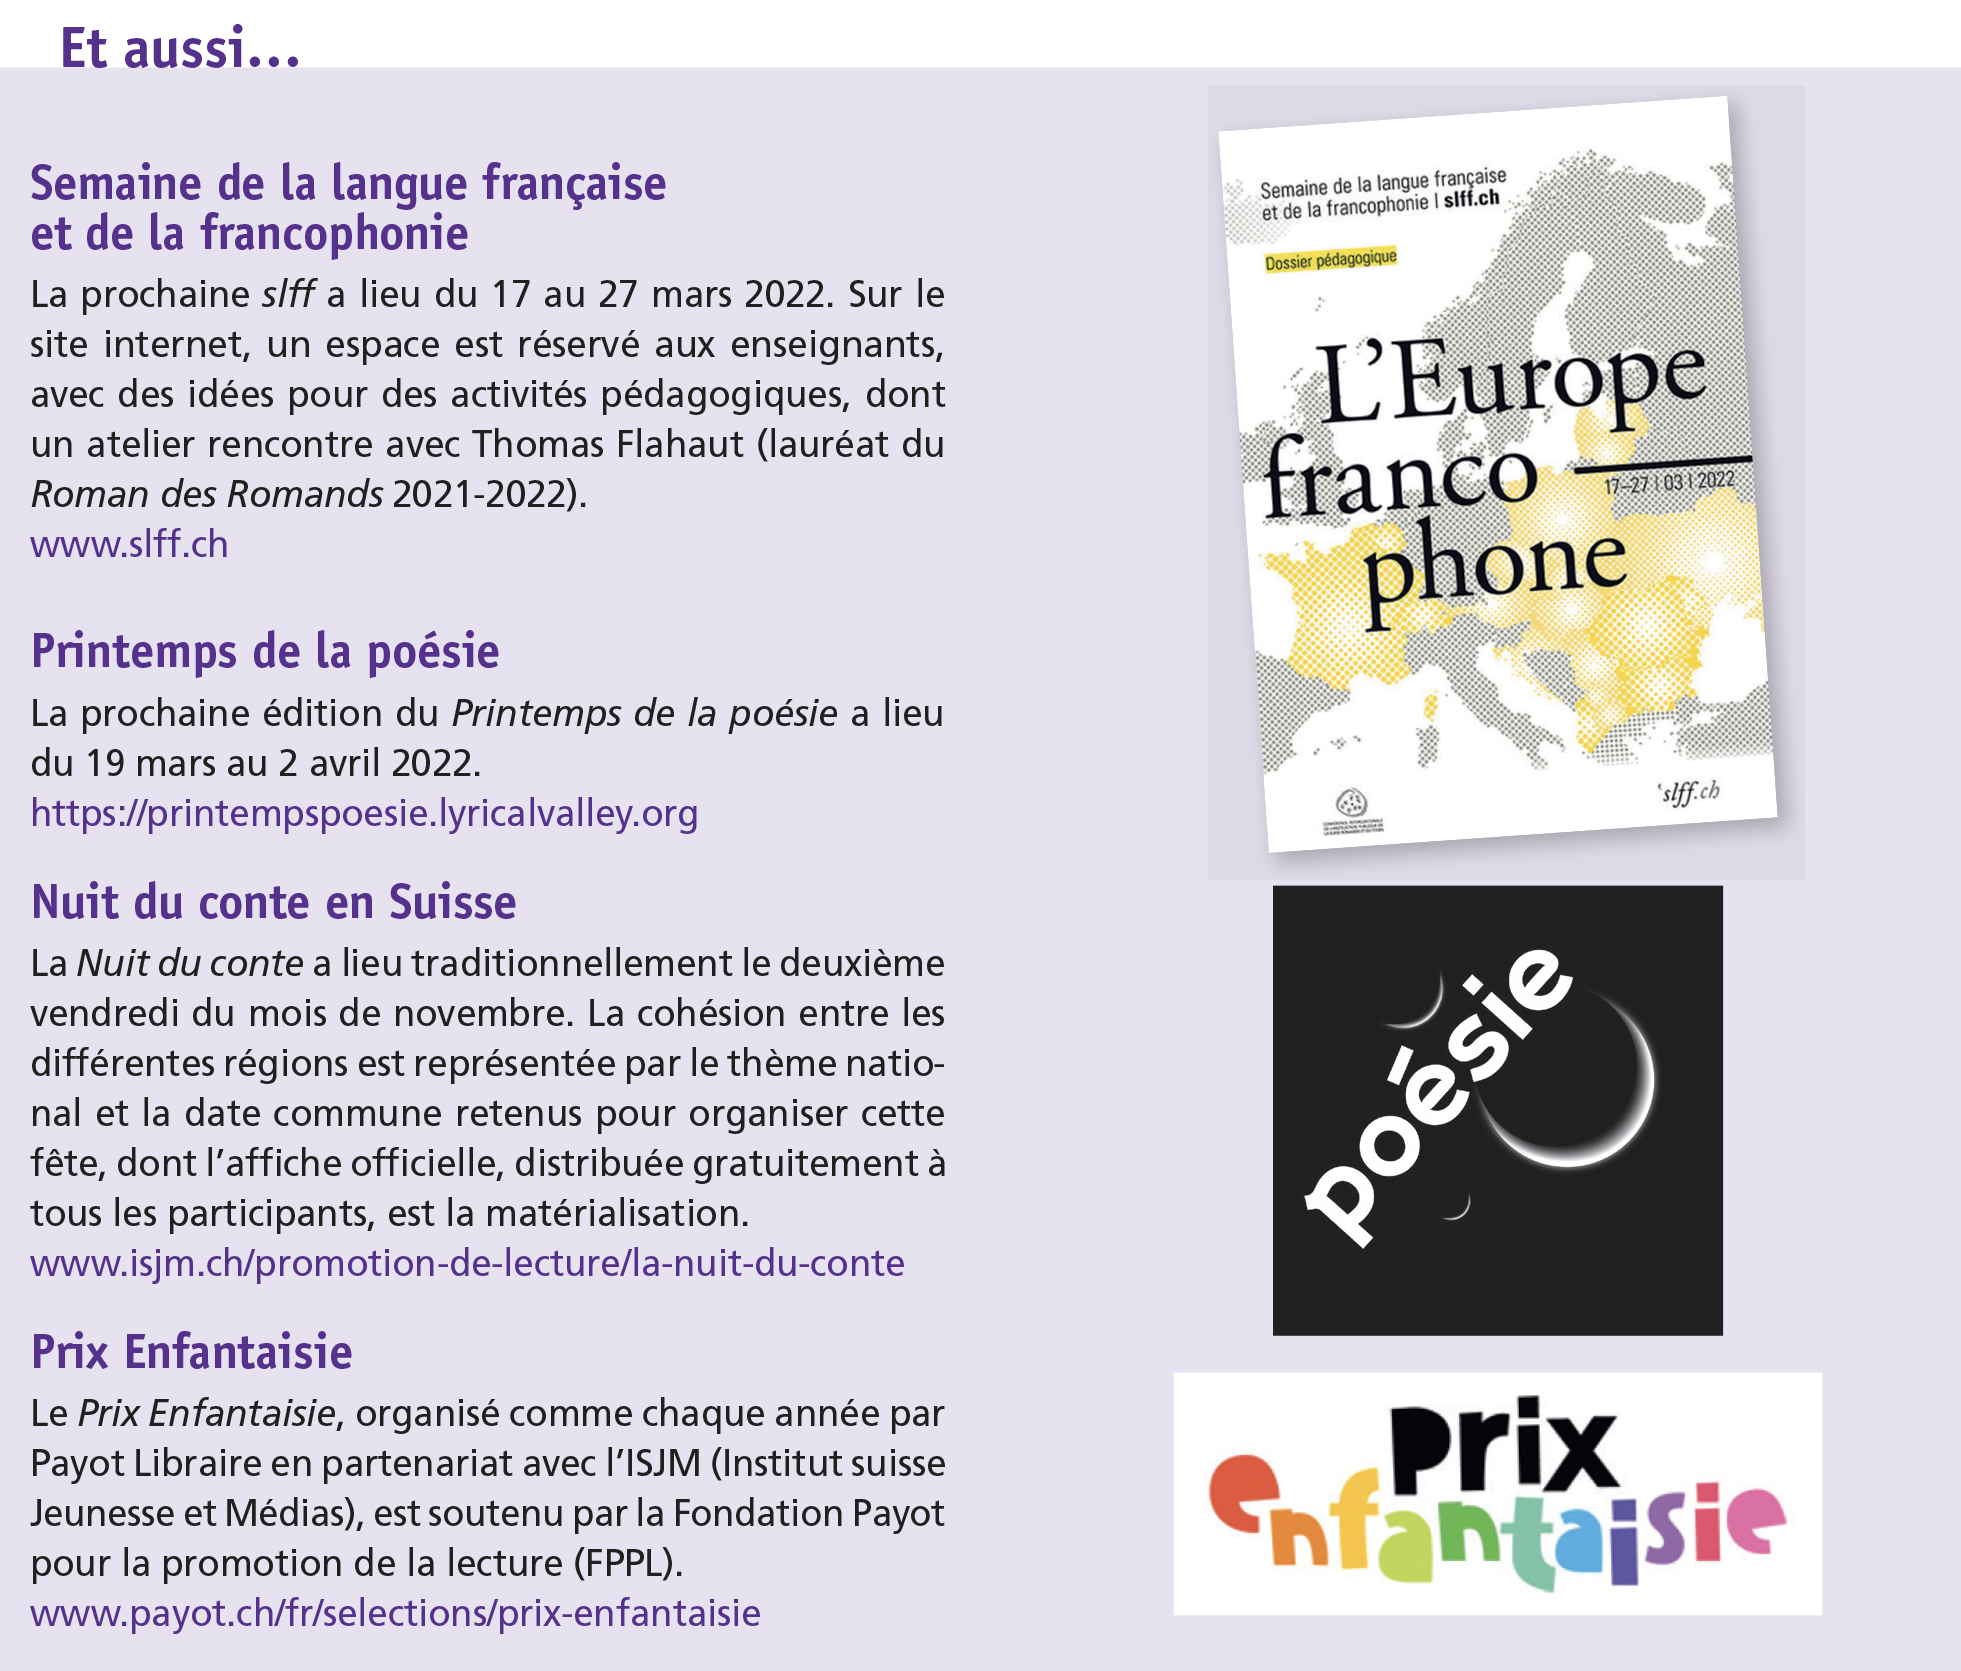 Semaine de la langue française et de la francophonie - Printemps de la poésie - Nuit du conte en Suisse - Prix Enfantaisie